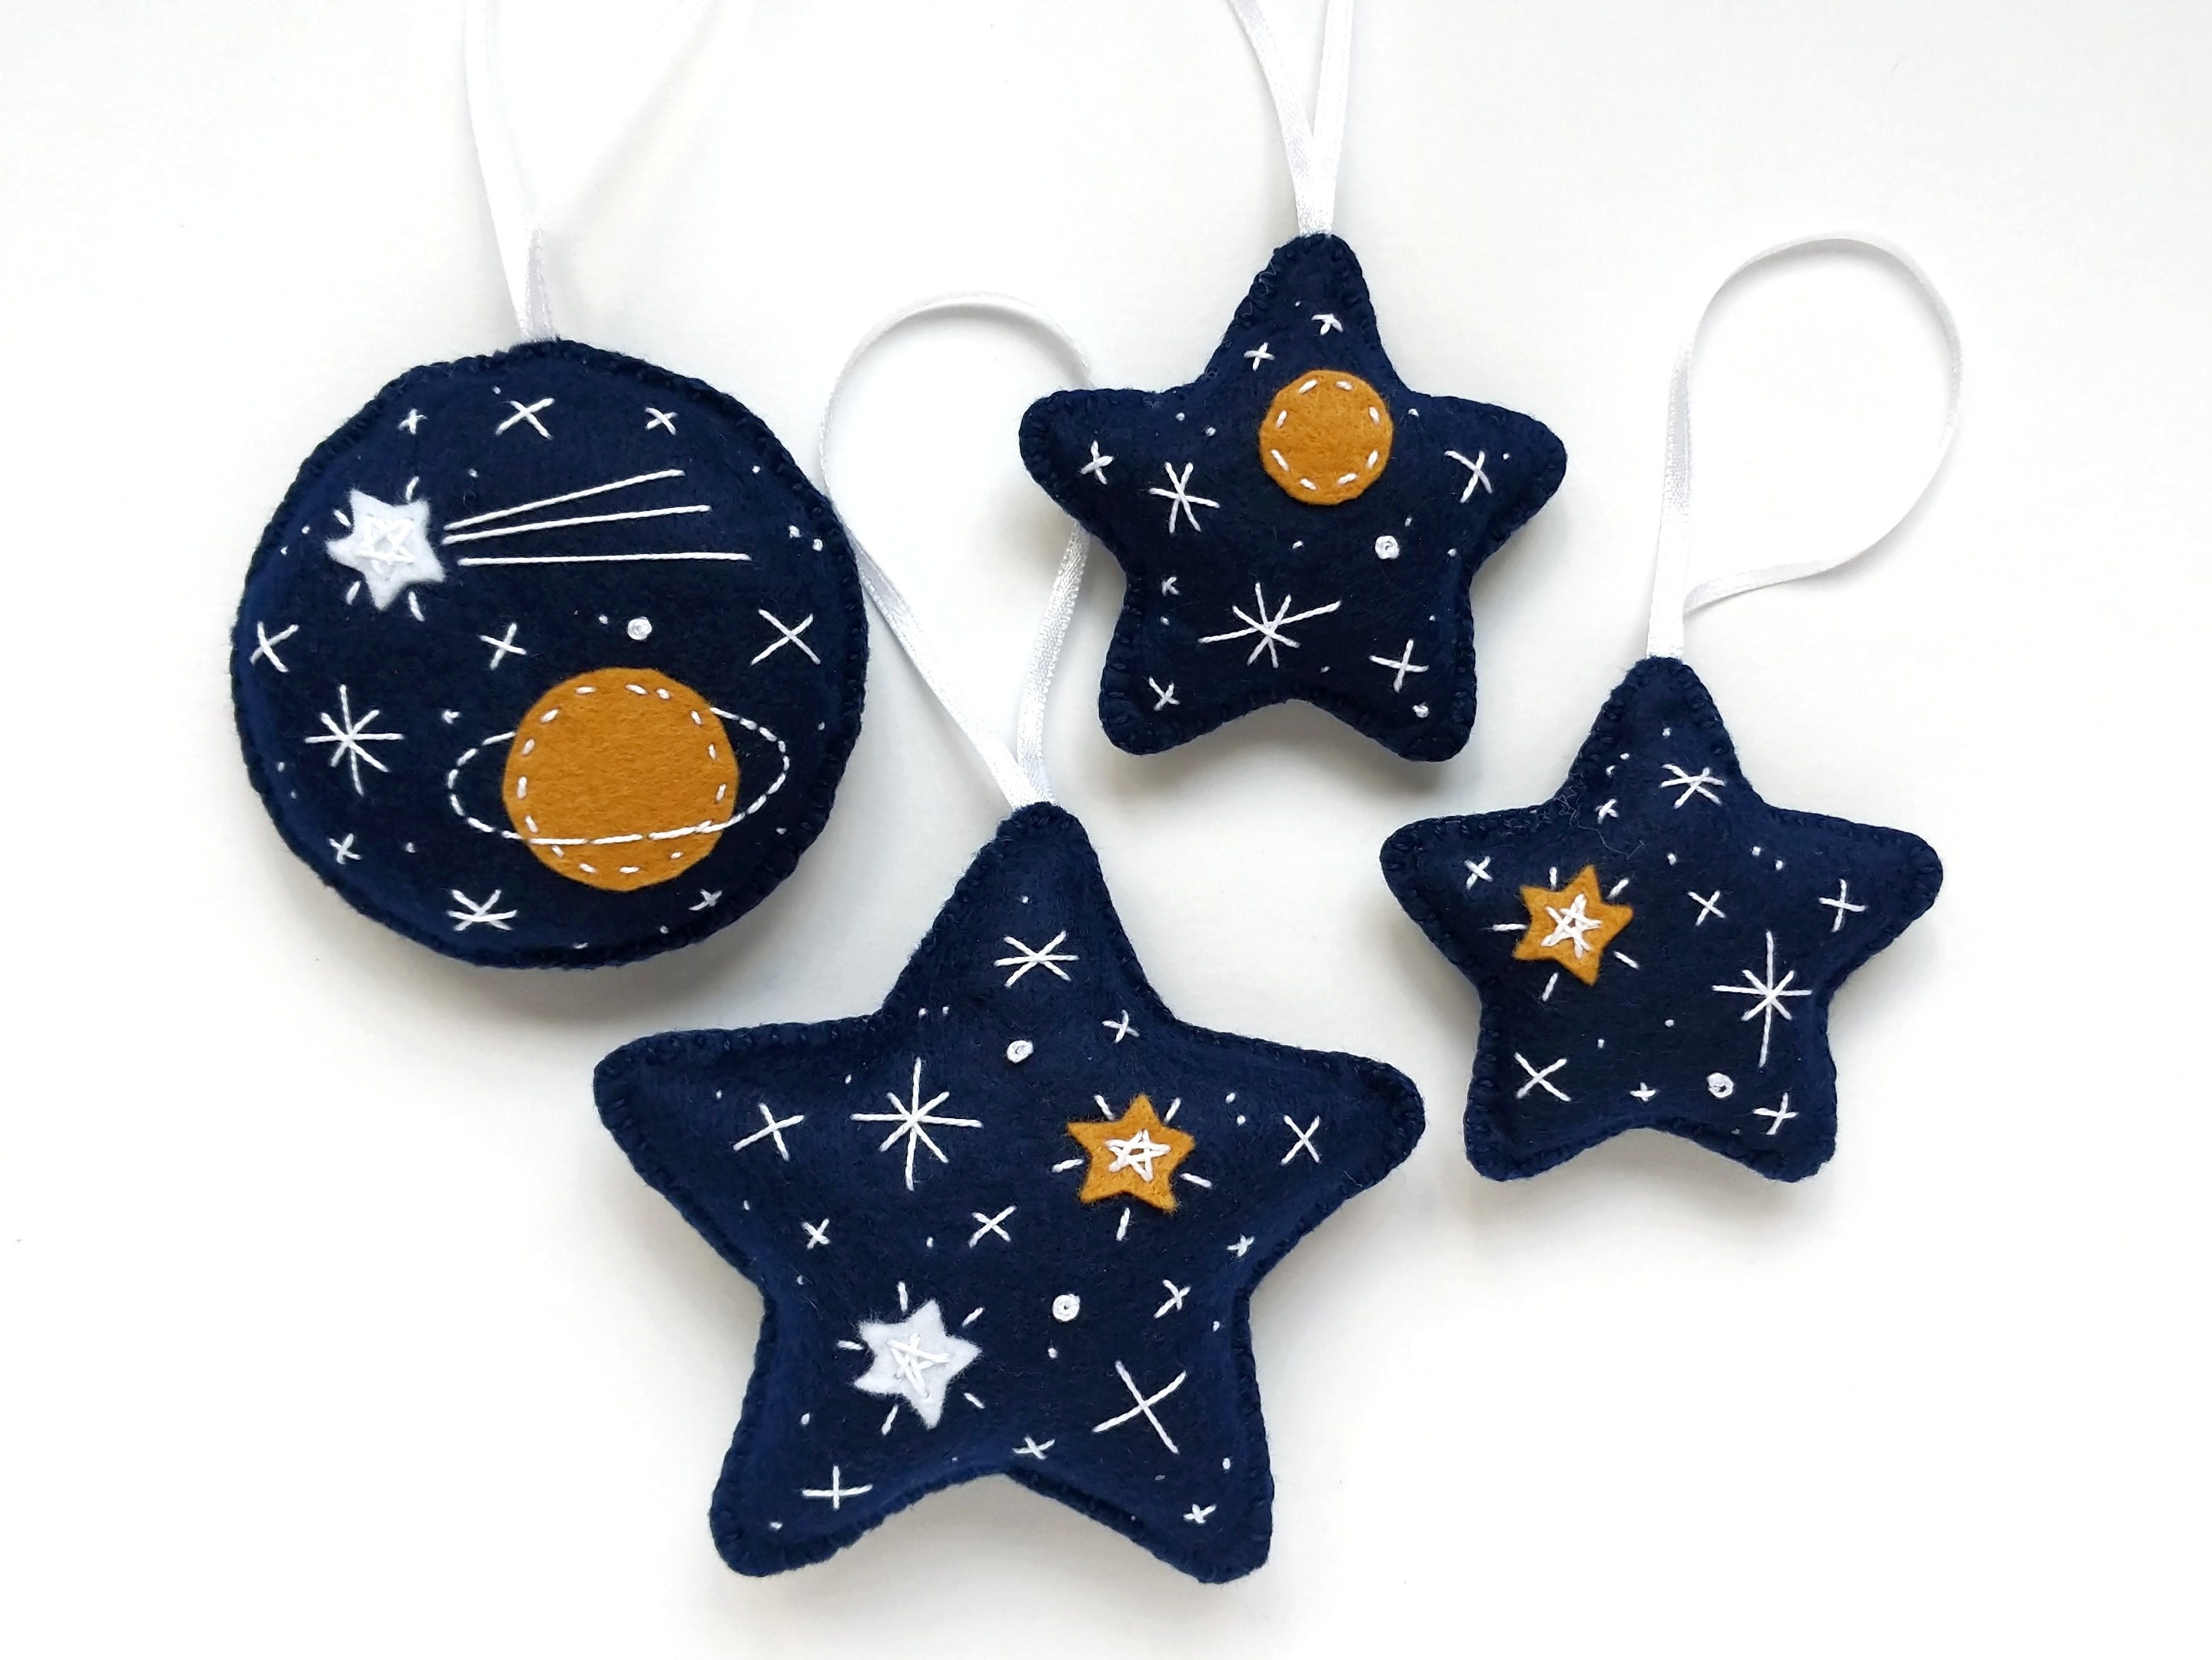 Ornement de Feutre Bleu Foncé Brodé Réglé avec Saturne et Étoiles, Ornements d'arbre Noël